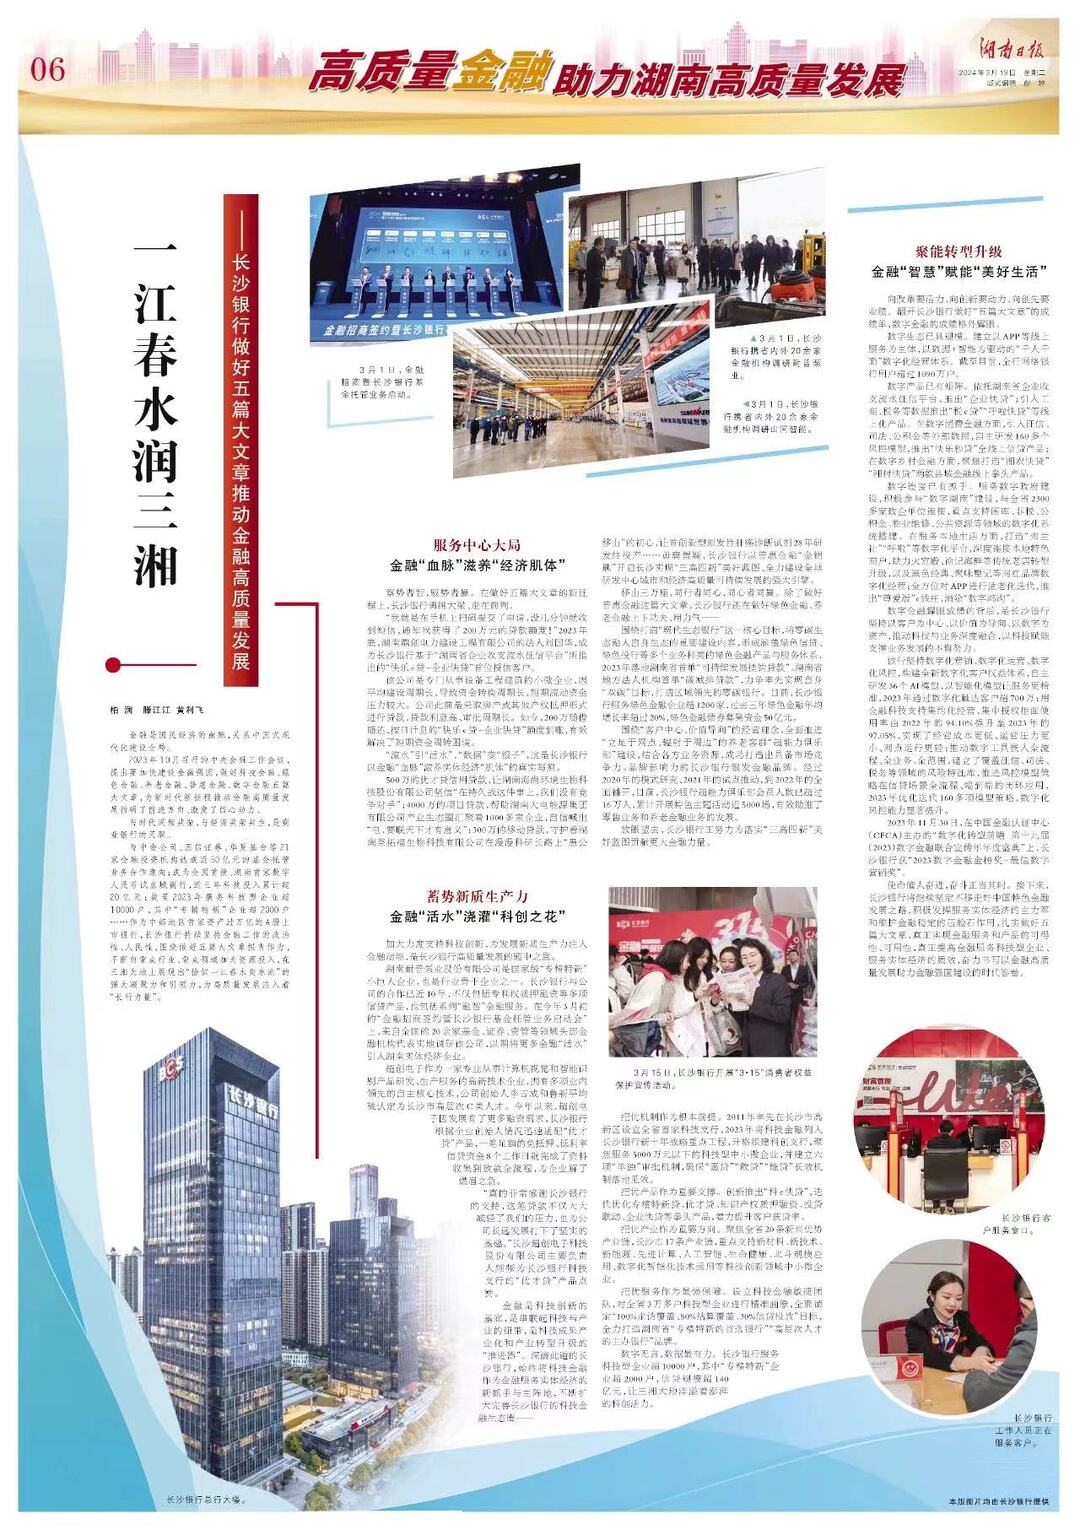 湖南日报丨一江春水润三湘 ——长沙银行做好五篇大文章推动金融高质量发展